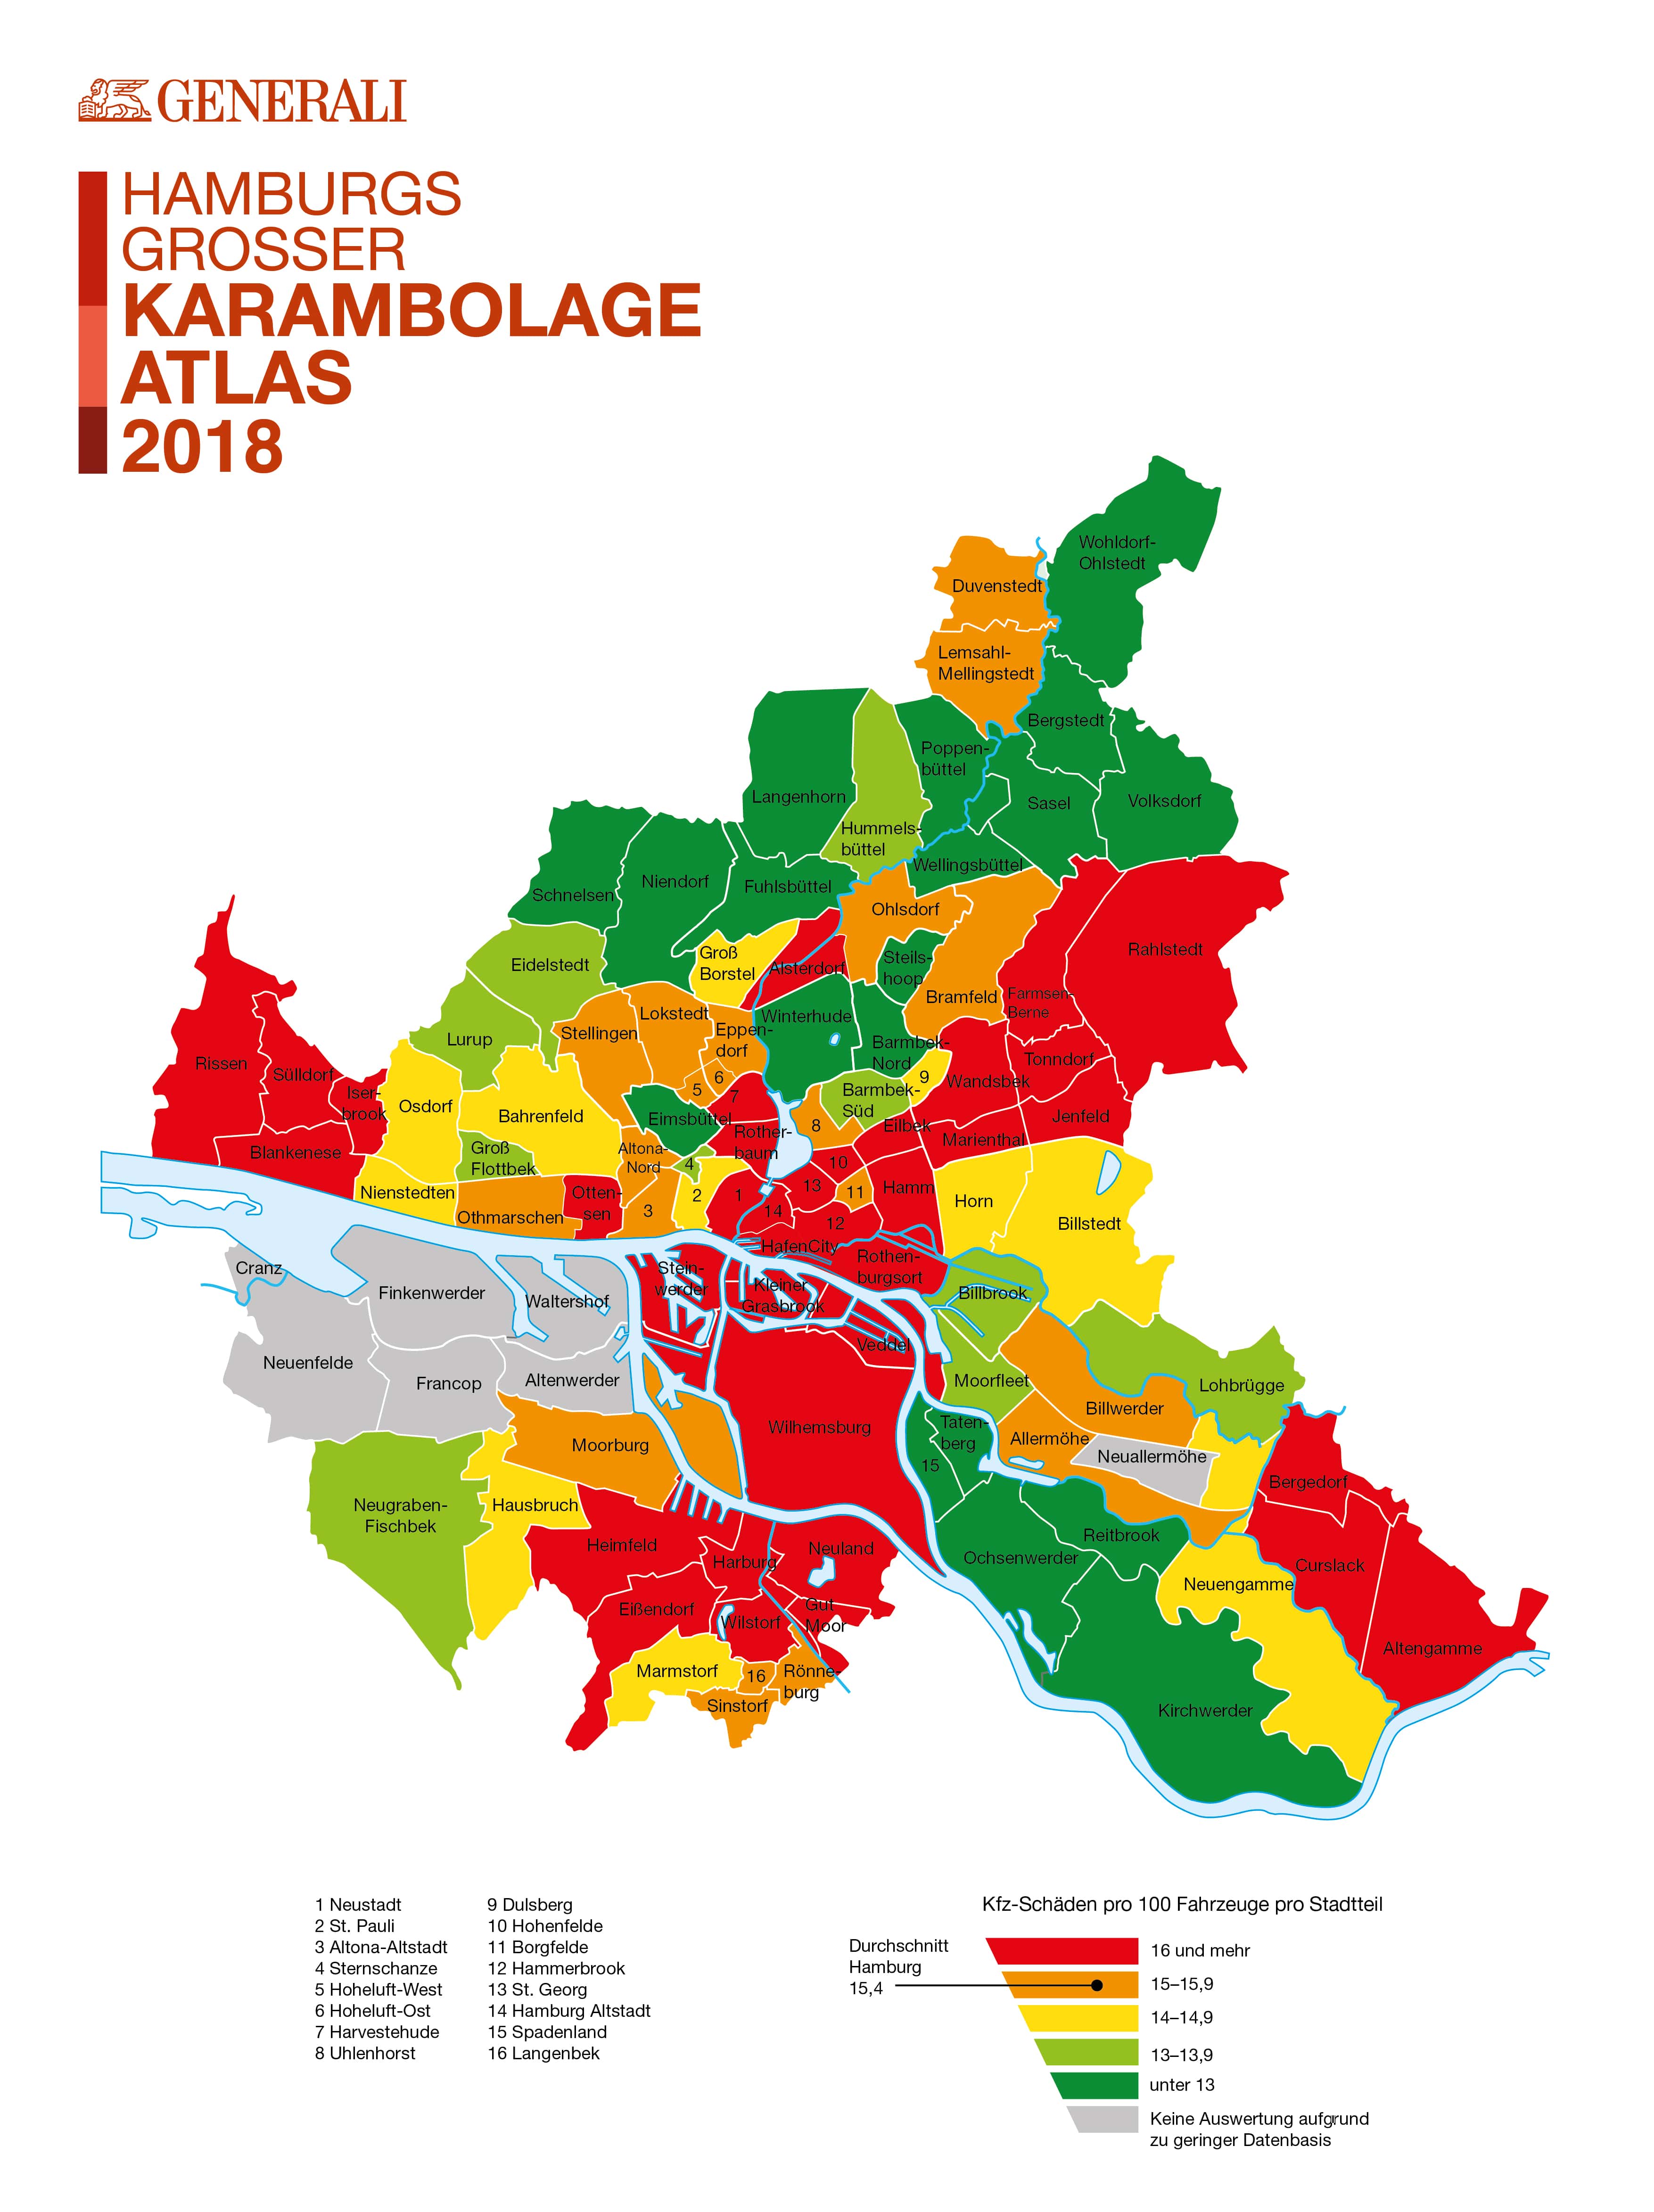 Der Karambolage-Atlas zeigt, wo es in Hamburg am häufigsten kracht. Foto: pixabay